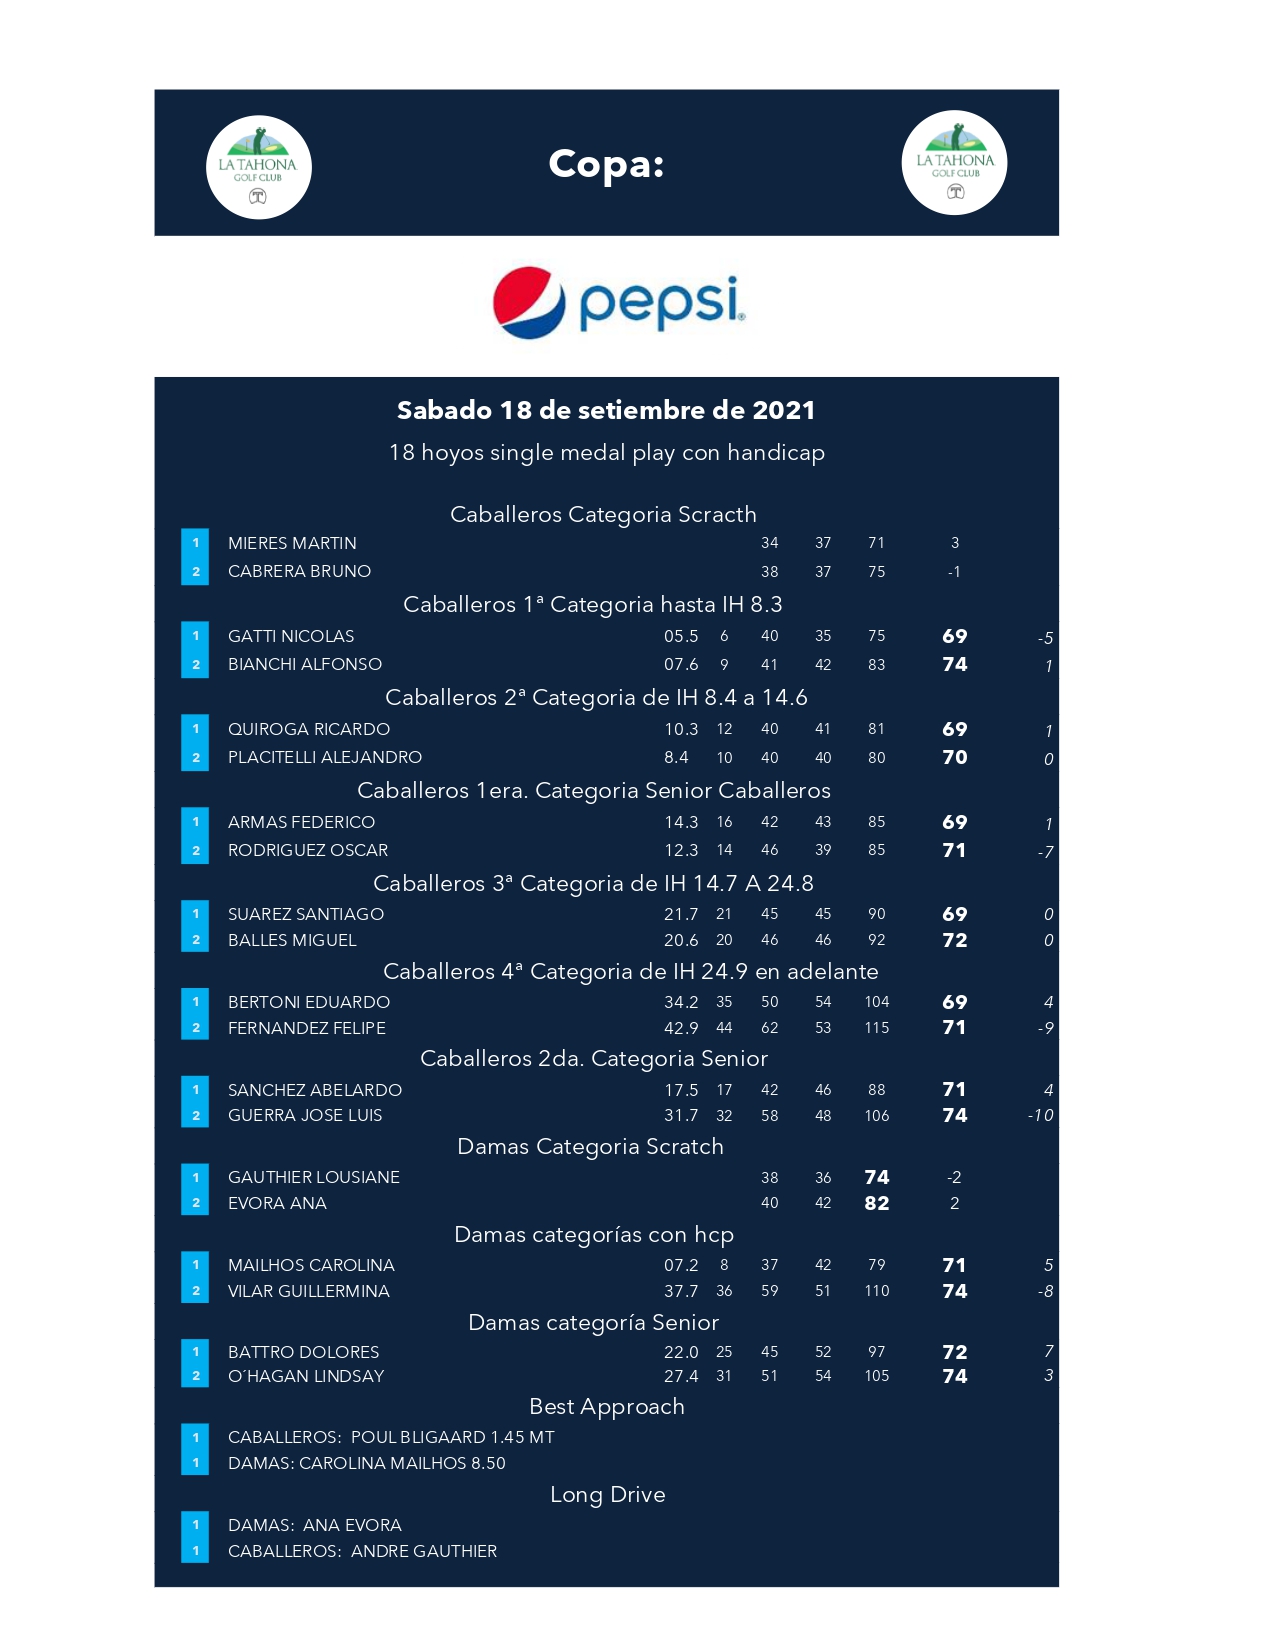 Copa Pepsi 2021 - Resultados Generales por Categora